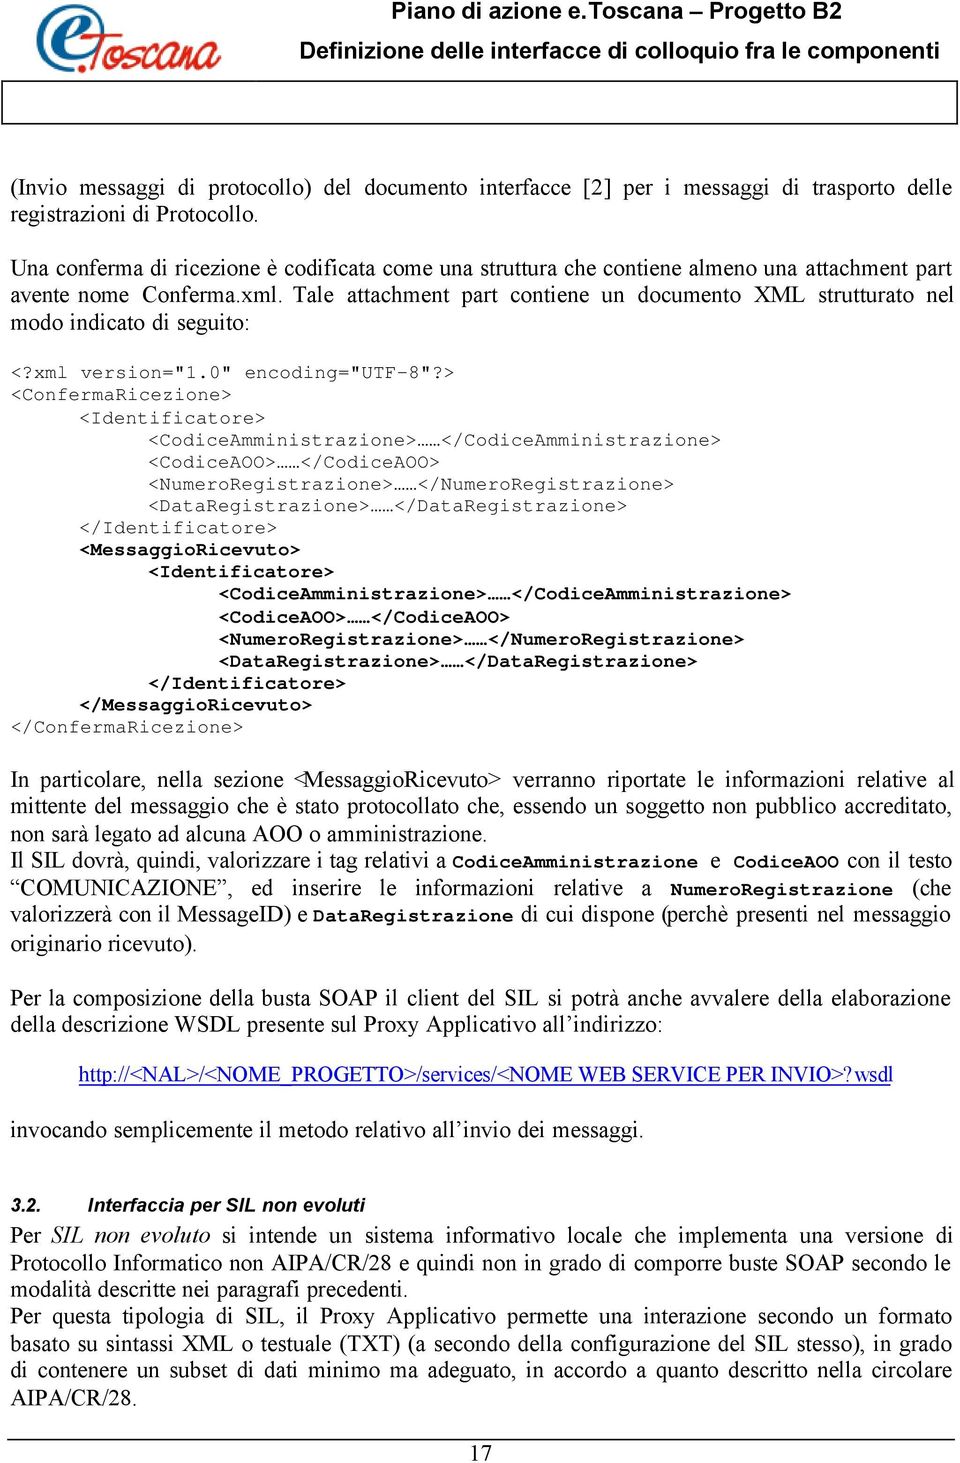 Tale attachment part contiene un documento XML strutturato nel modo indicato di seguito: <?xml version="1.0" encoding="utf-8"?